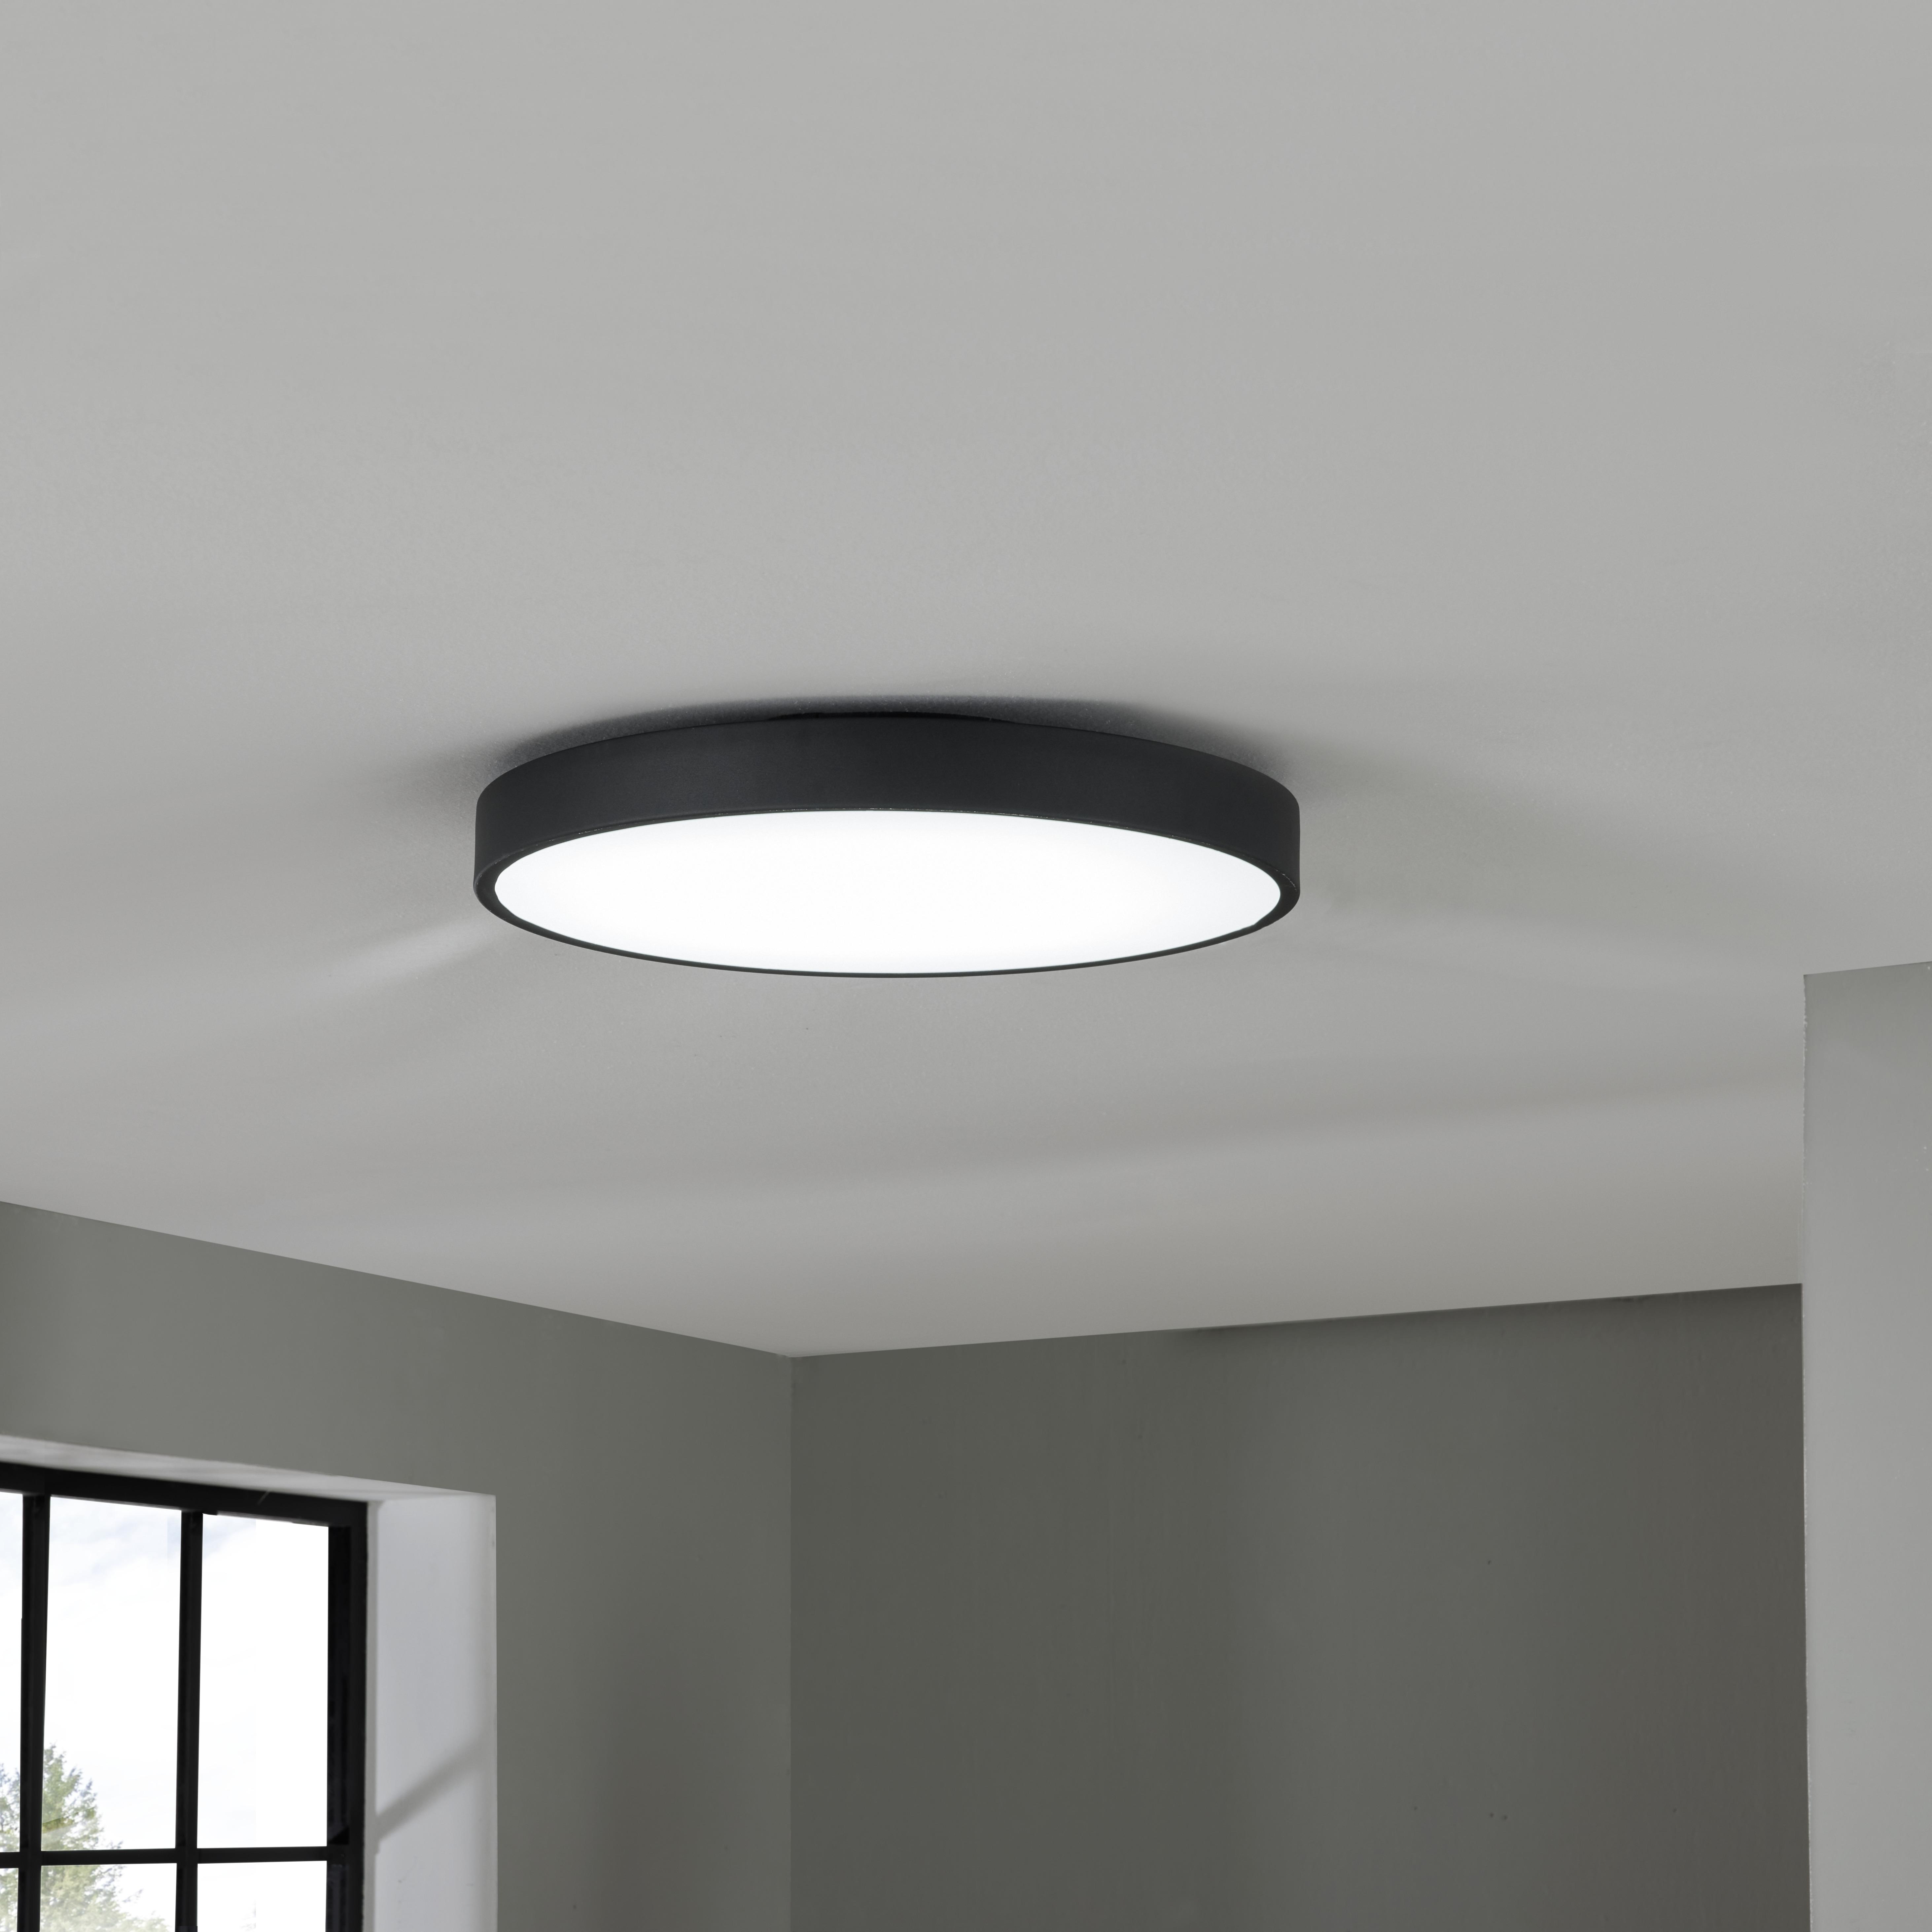 LED-Deckenleuchte Annella max. 24 Watt - Schwarz/Weiß, MODERN, Kunststoff/Metall (50/8,5cm) - Premium Living